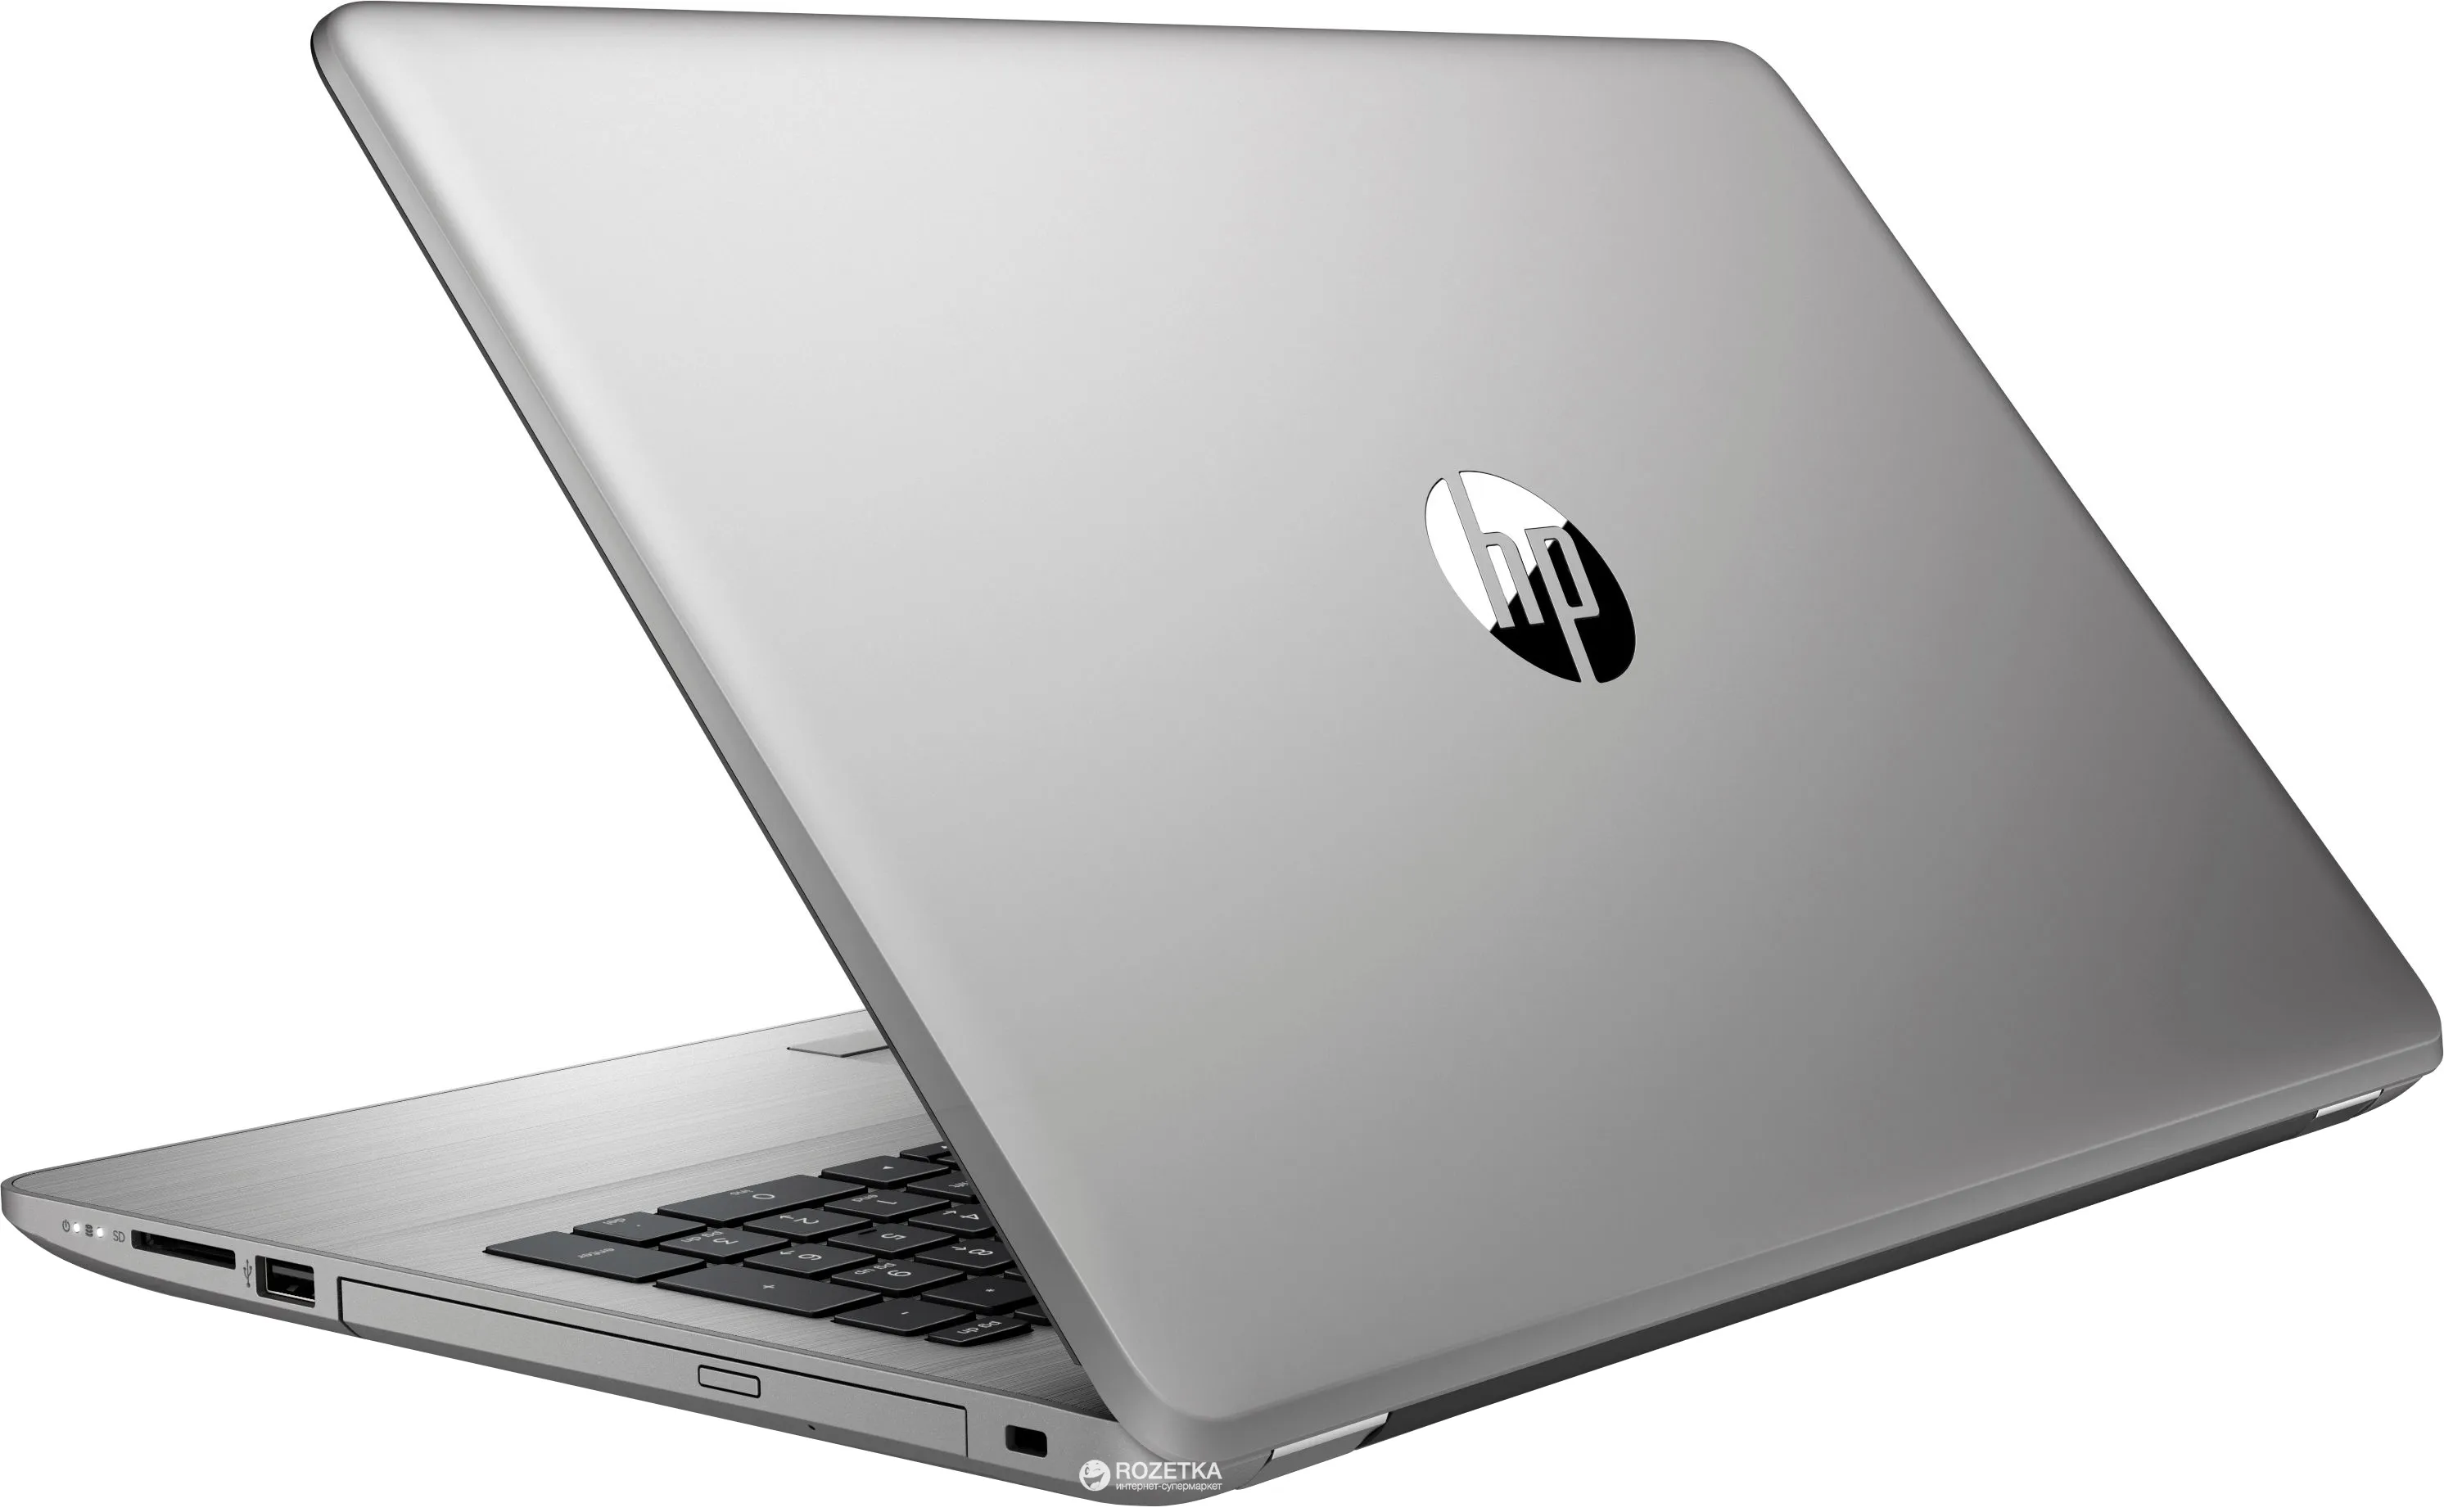 Ноутбук HP 250 G5 /Intel i3-5005U/4 GB DDR3/ 500GB HDD /15.6" HD LED/2GB AMD Radeon R5 M430/ DVD / RUS#9